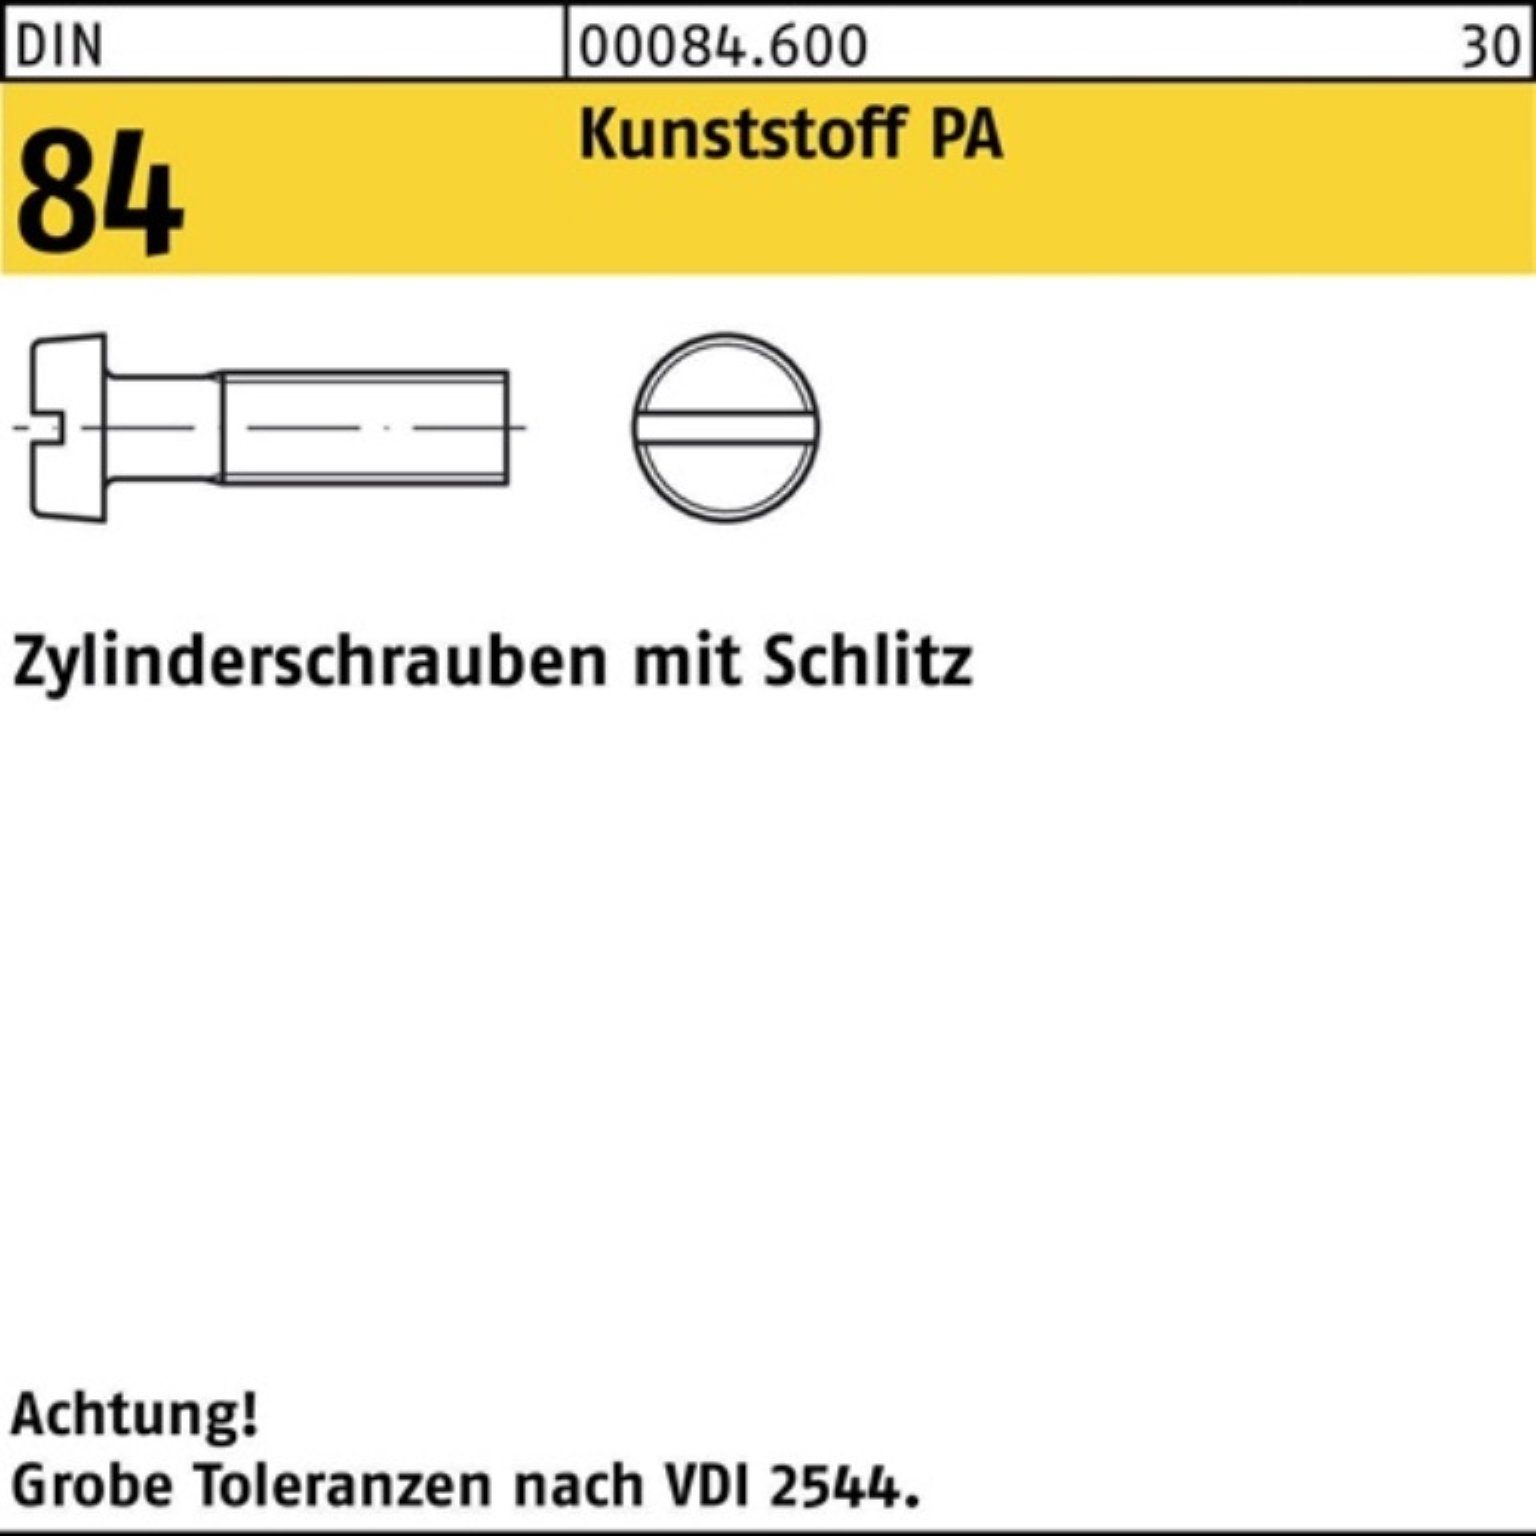 M4x Reyher DIN Polyamid 200er Schlitz Pack 84/ISO 35 20 1207 Zylinderschraube Zylinderschraube